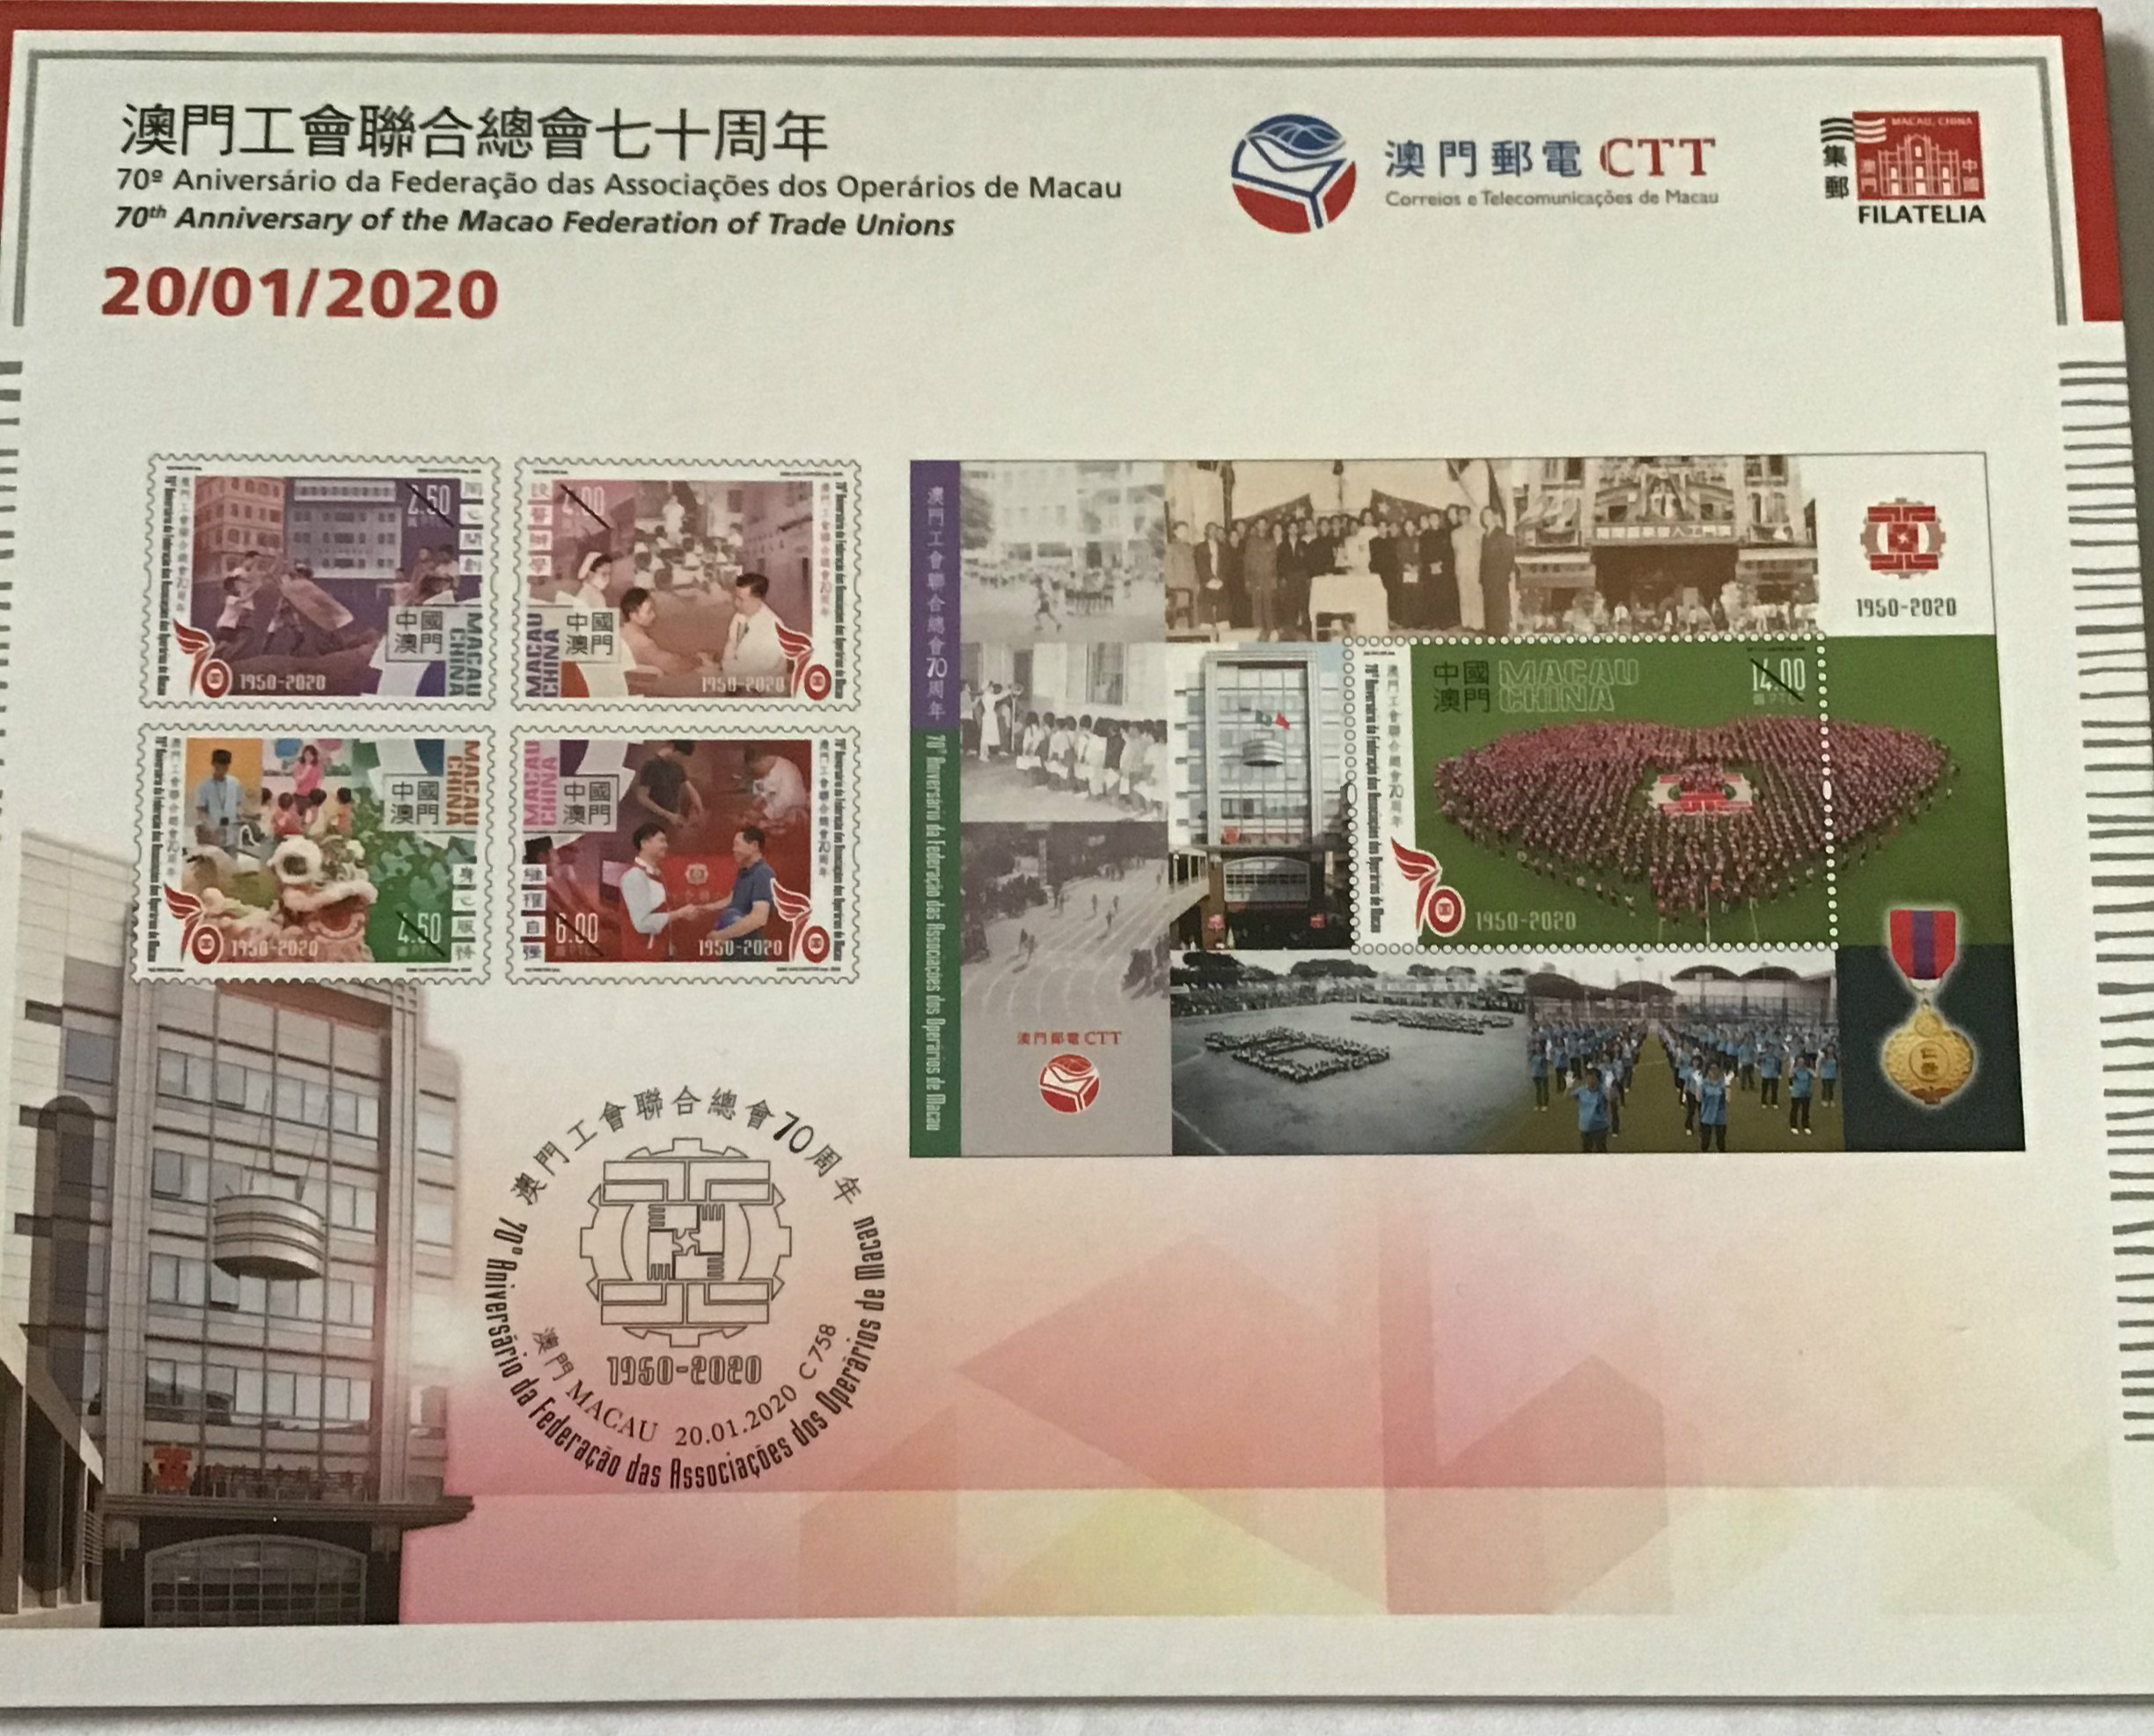 澳门将发行《澳门工会联合总会七十周年》纪念邮票